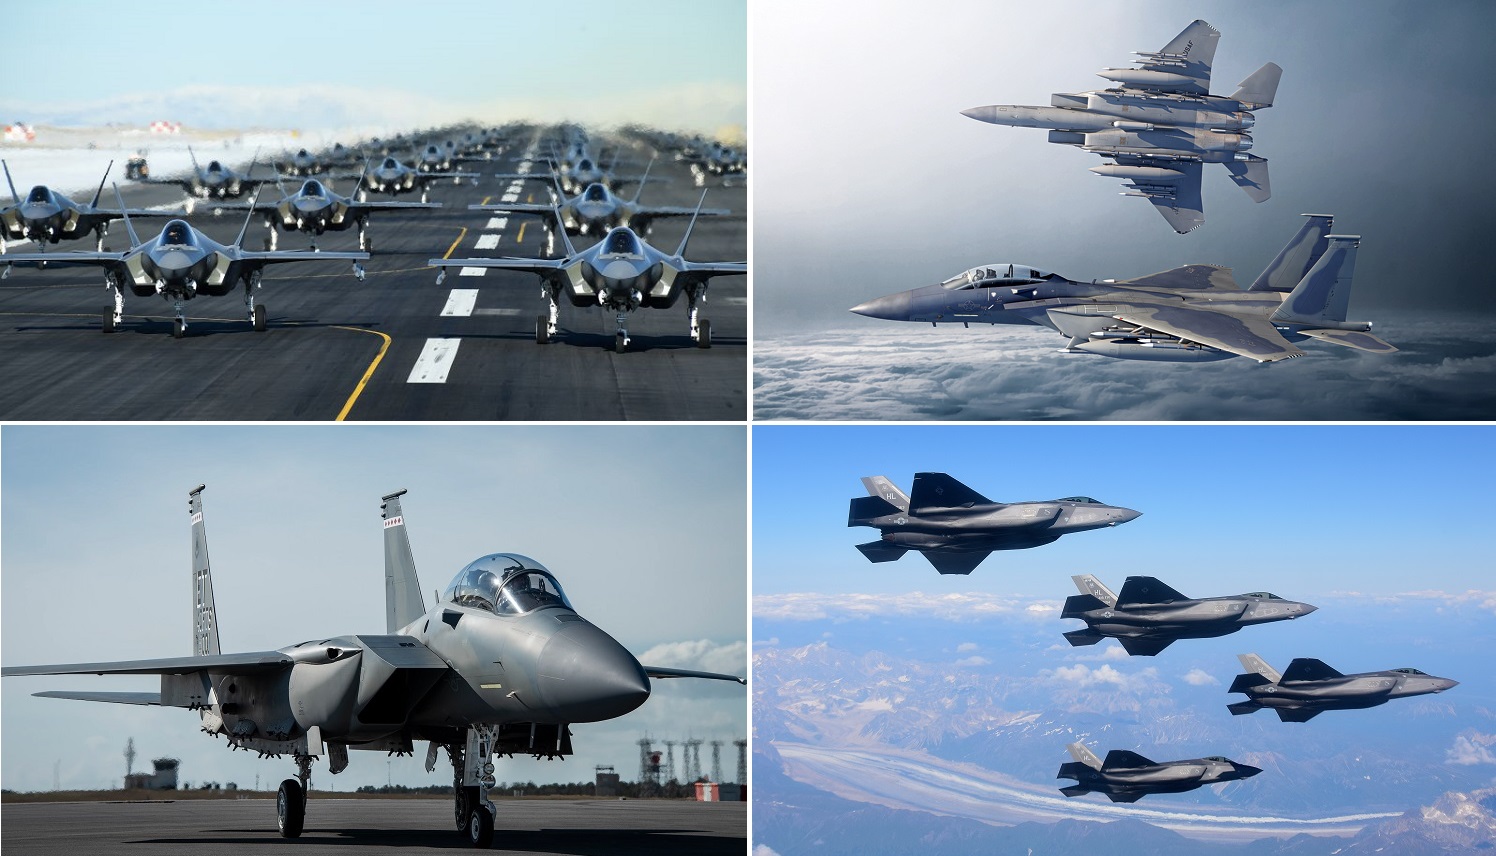 L'armée de l'air américaine va acquérir 72 avions de combat pour la première fois dans l'histoire récente - le service a demandé des fonds pour commander 48 F-35 et 24 F-15EX modernisés.